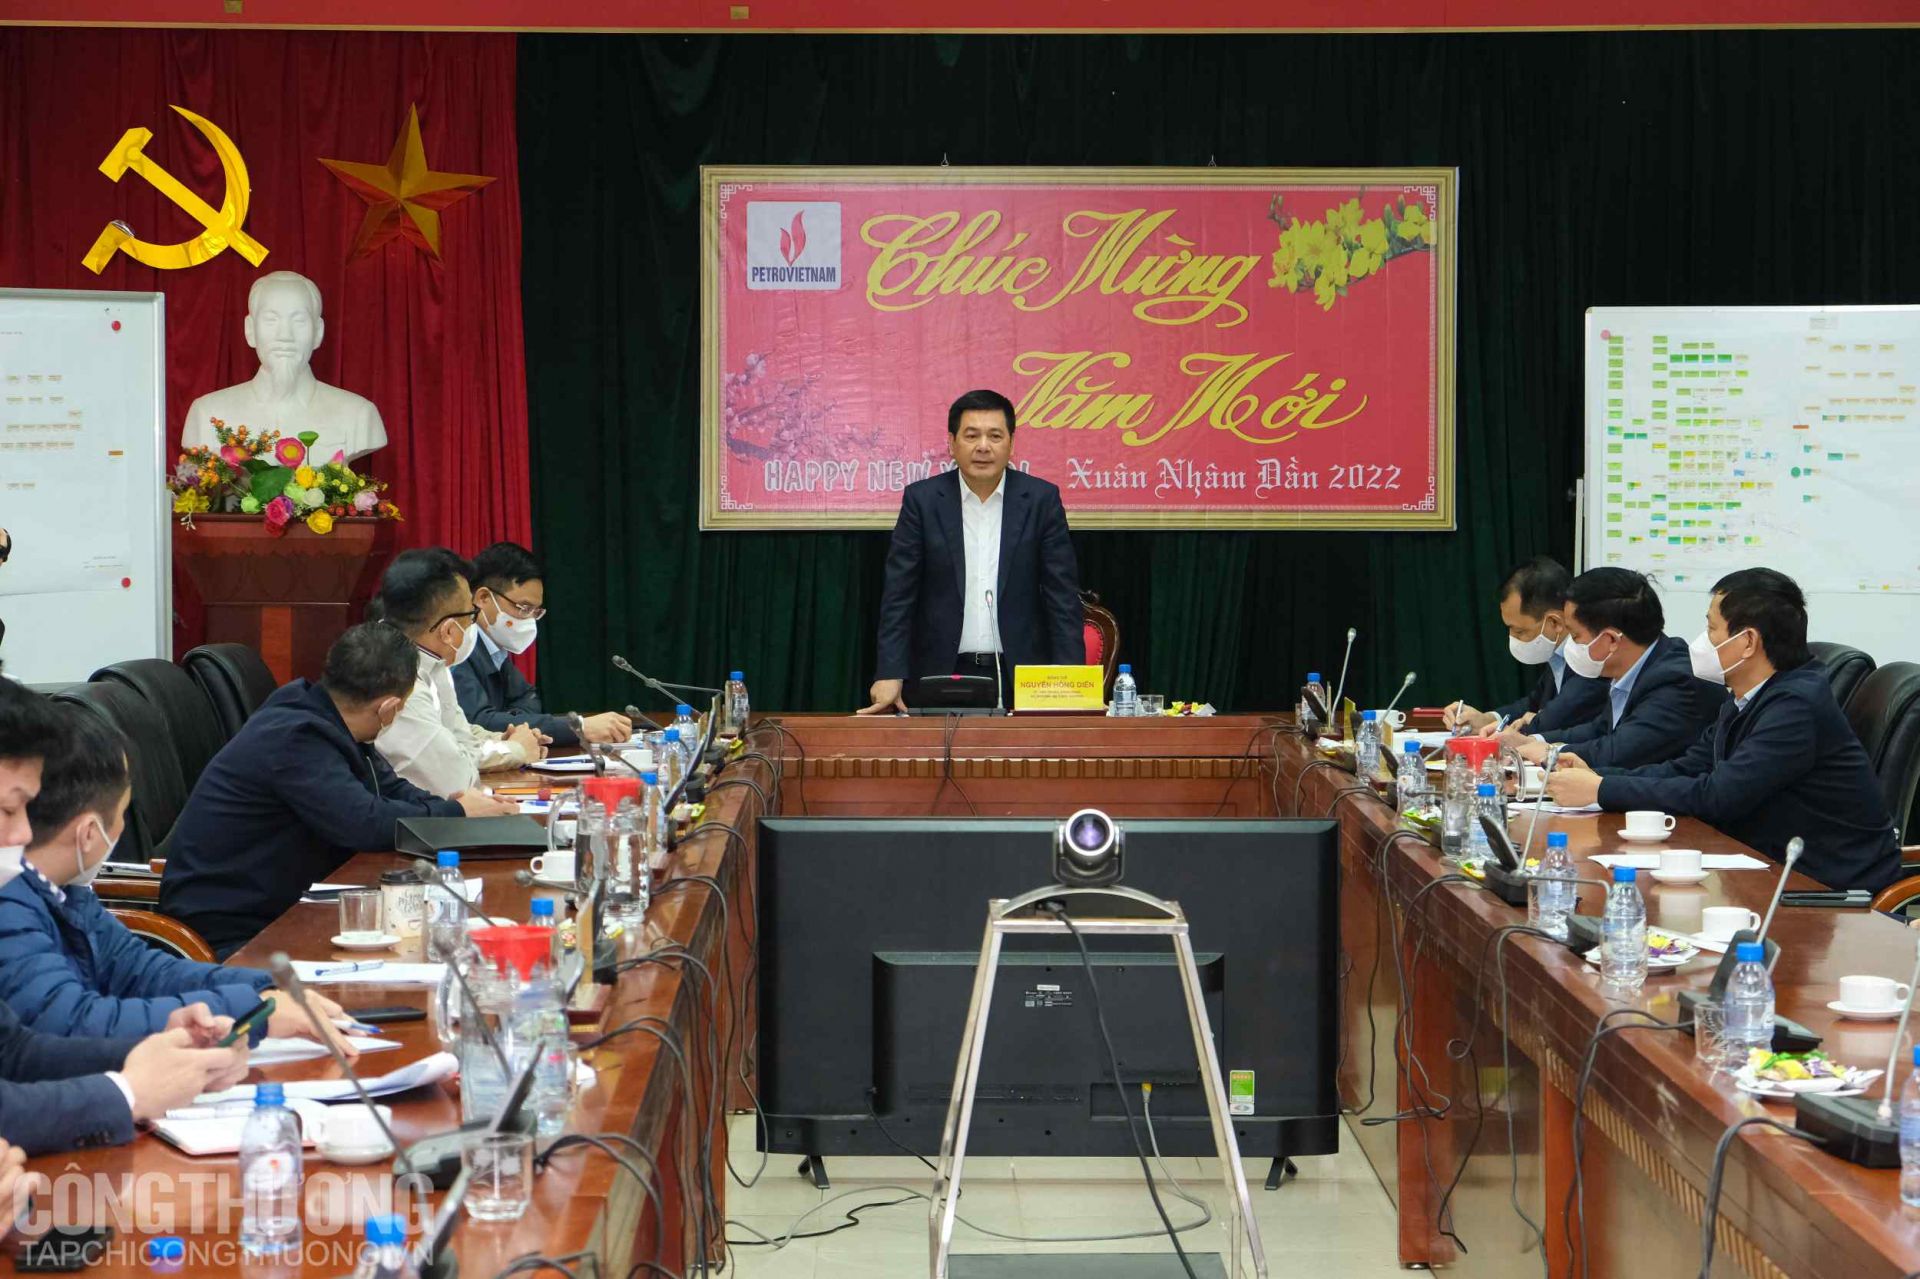 Bộ trưởng Nguyễn Hồng Diên đặt ra 5 nhóm nhiệm vụ trọng tâm cho PVN và các nhà thầu, khẳng định Bộ Công Thương sẽ phối hợp với các Bộ, ngành để thường xuyên thông tin, tháo gỡ vướng mắc kịp thời cho dự án Nhiệt điện Thái Bình 2